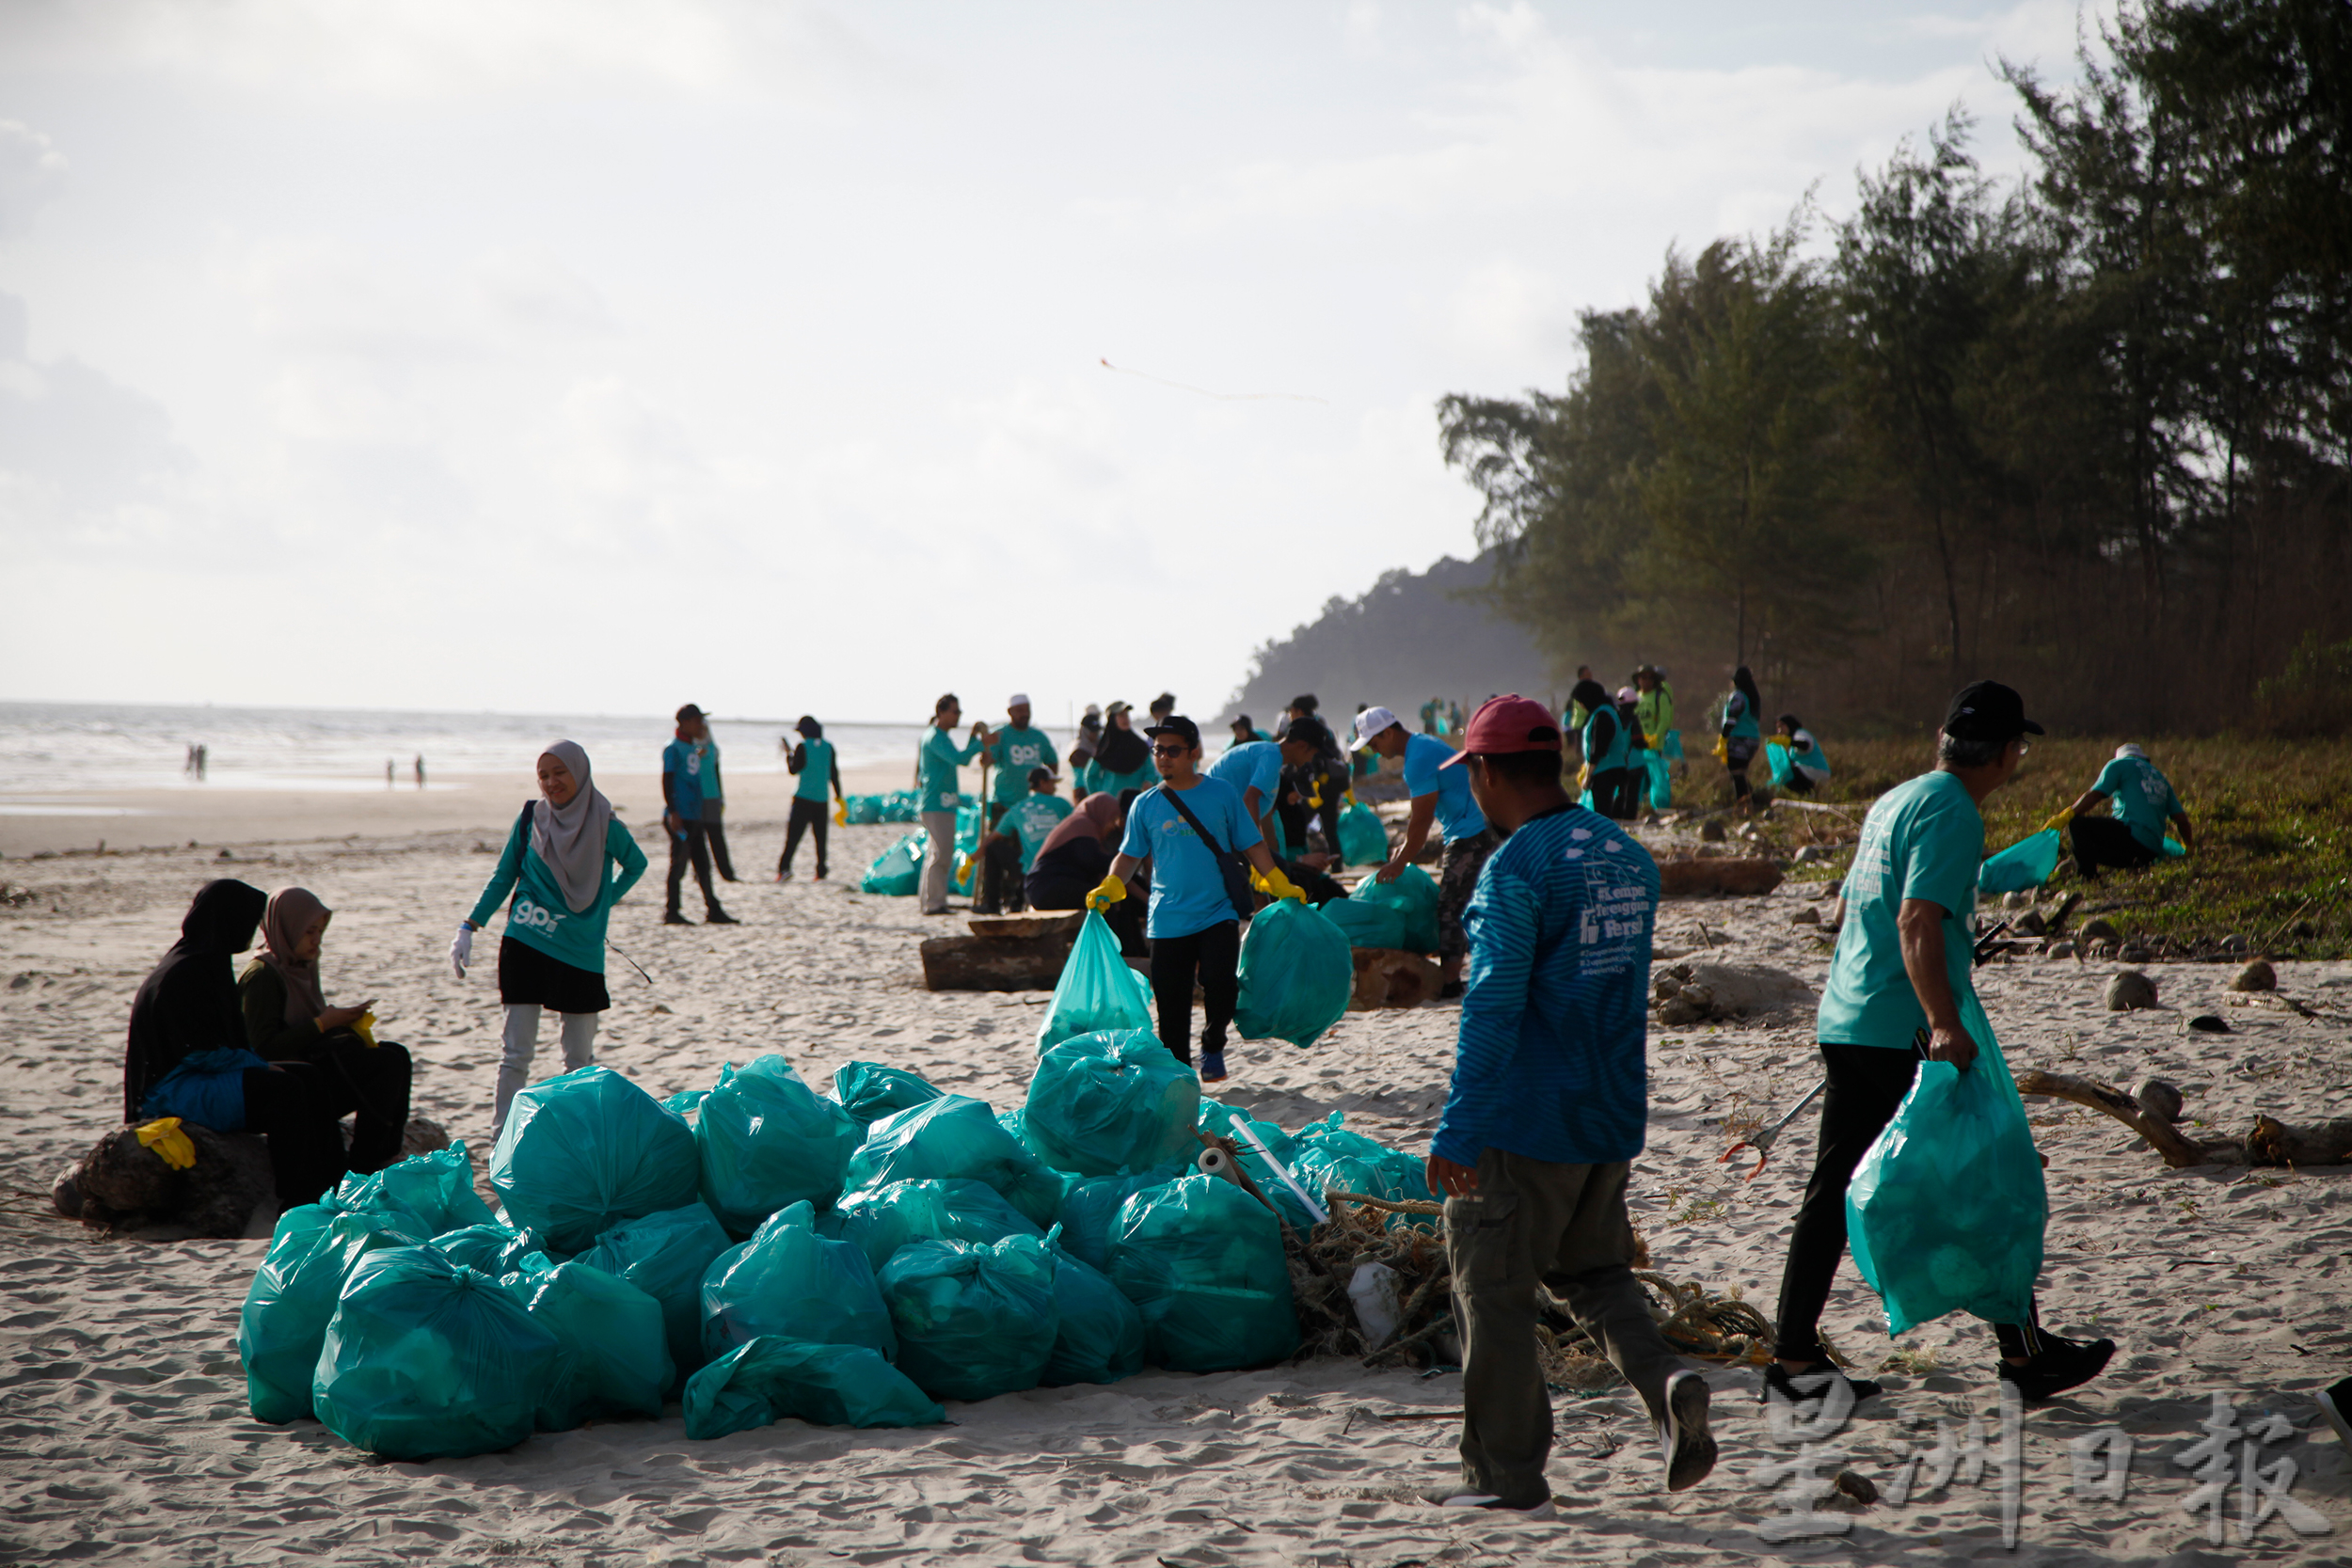 东：登州政府子公司EPIC与非政府组织“Geng Plastik Ija”及登嘉楼马来西亚大学环保团体“绿色战士”联合举行清洁沙滩活动，在短短3个小时共清理了超过1公吨的垃圾。